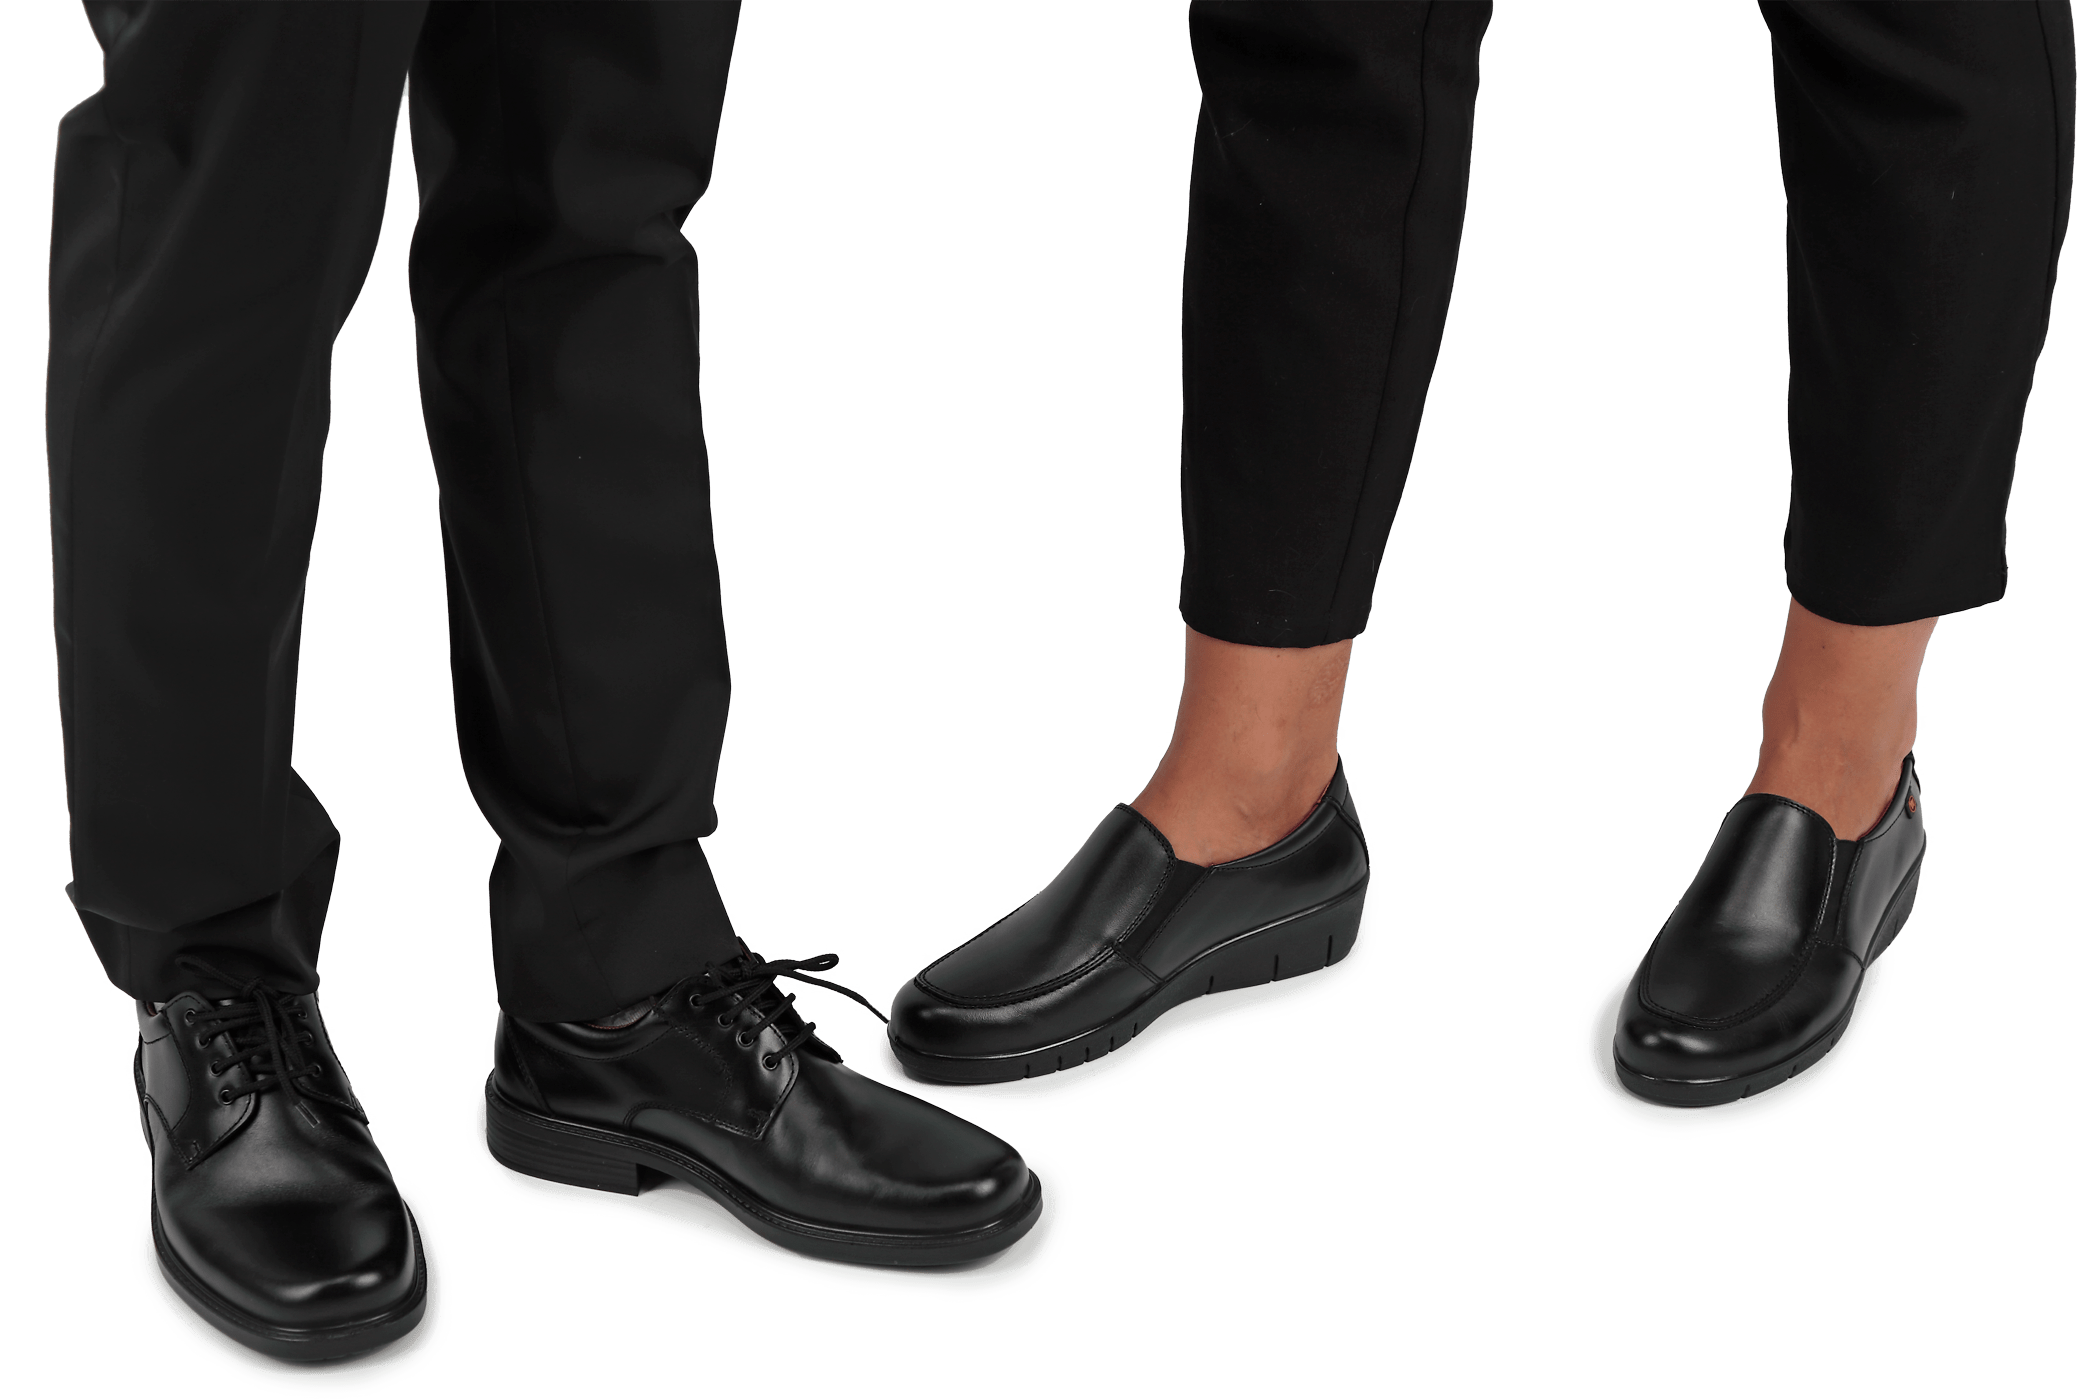 Calzado antideslizante, zapatos y zapatillas antideslizantes, Uniform  Advantage